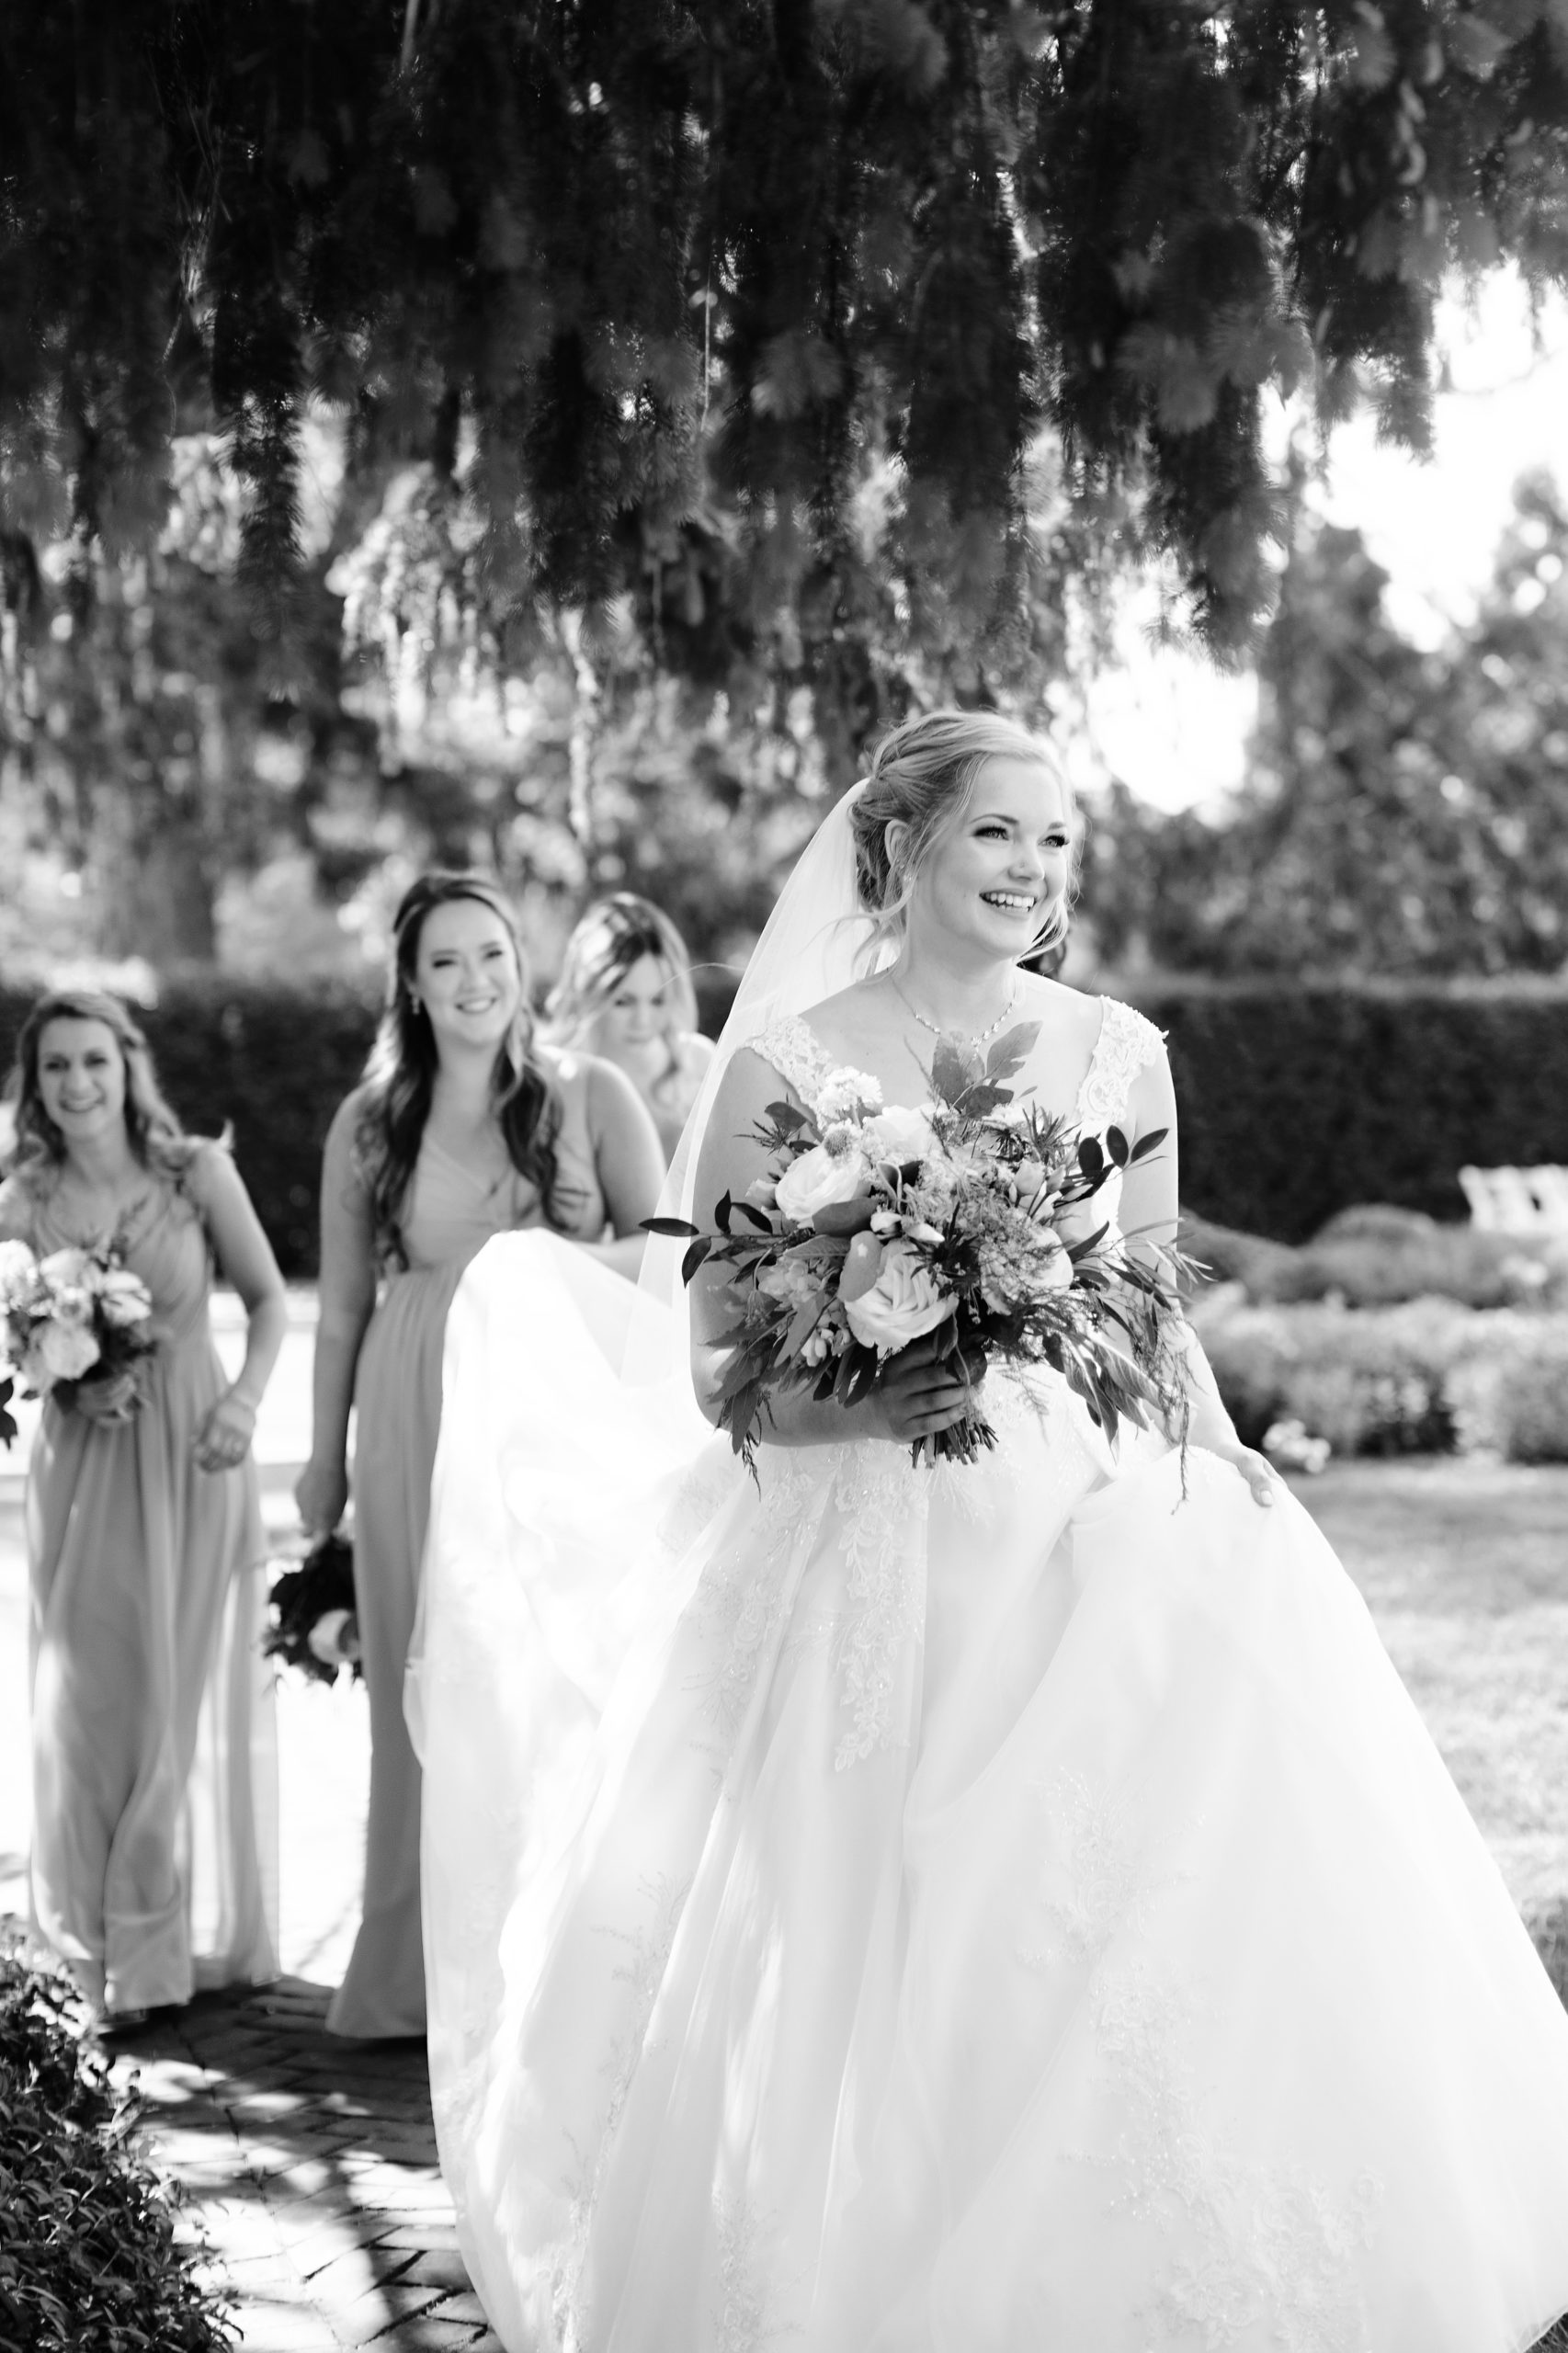 White Chimneys Wedding, Lancaster PA Wedding Photographer, Janae Rose Photography